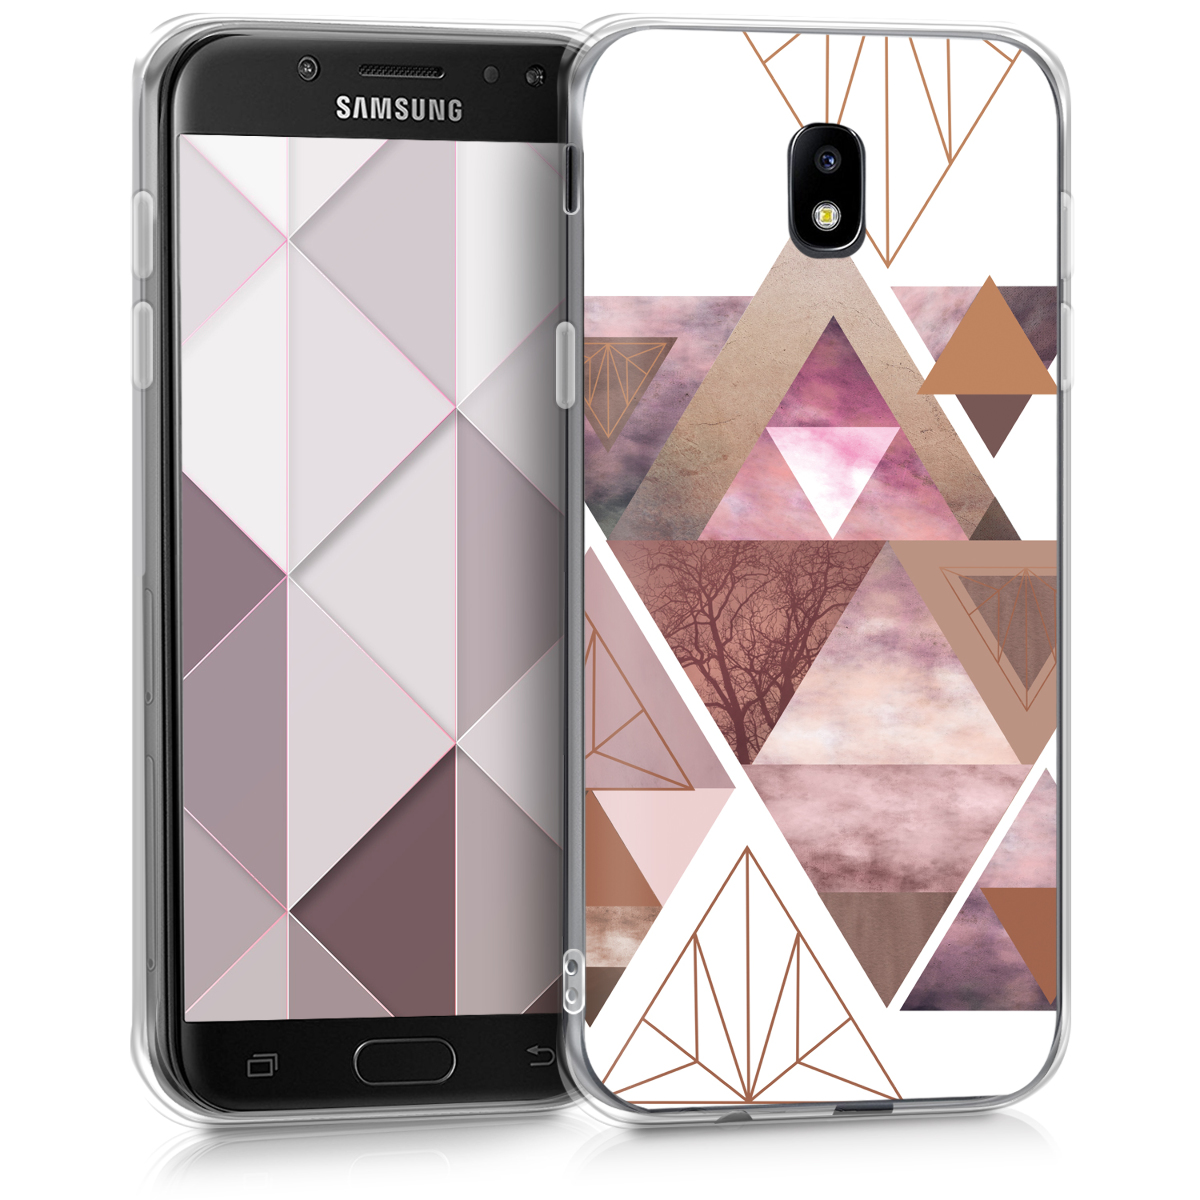 Kvalitní silikonové TPU pouzdro pro Samsung J5 (2017) DUOS - Patchwork trojúhelníky světle růžové / starorůžové rosegold / bílé